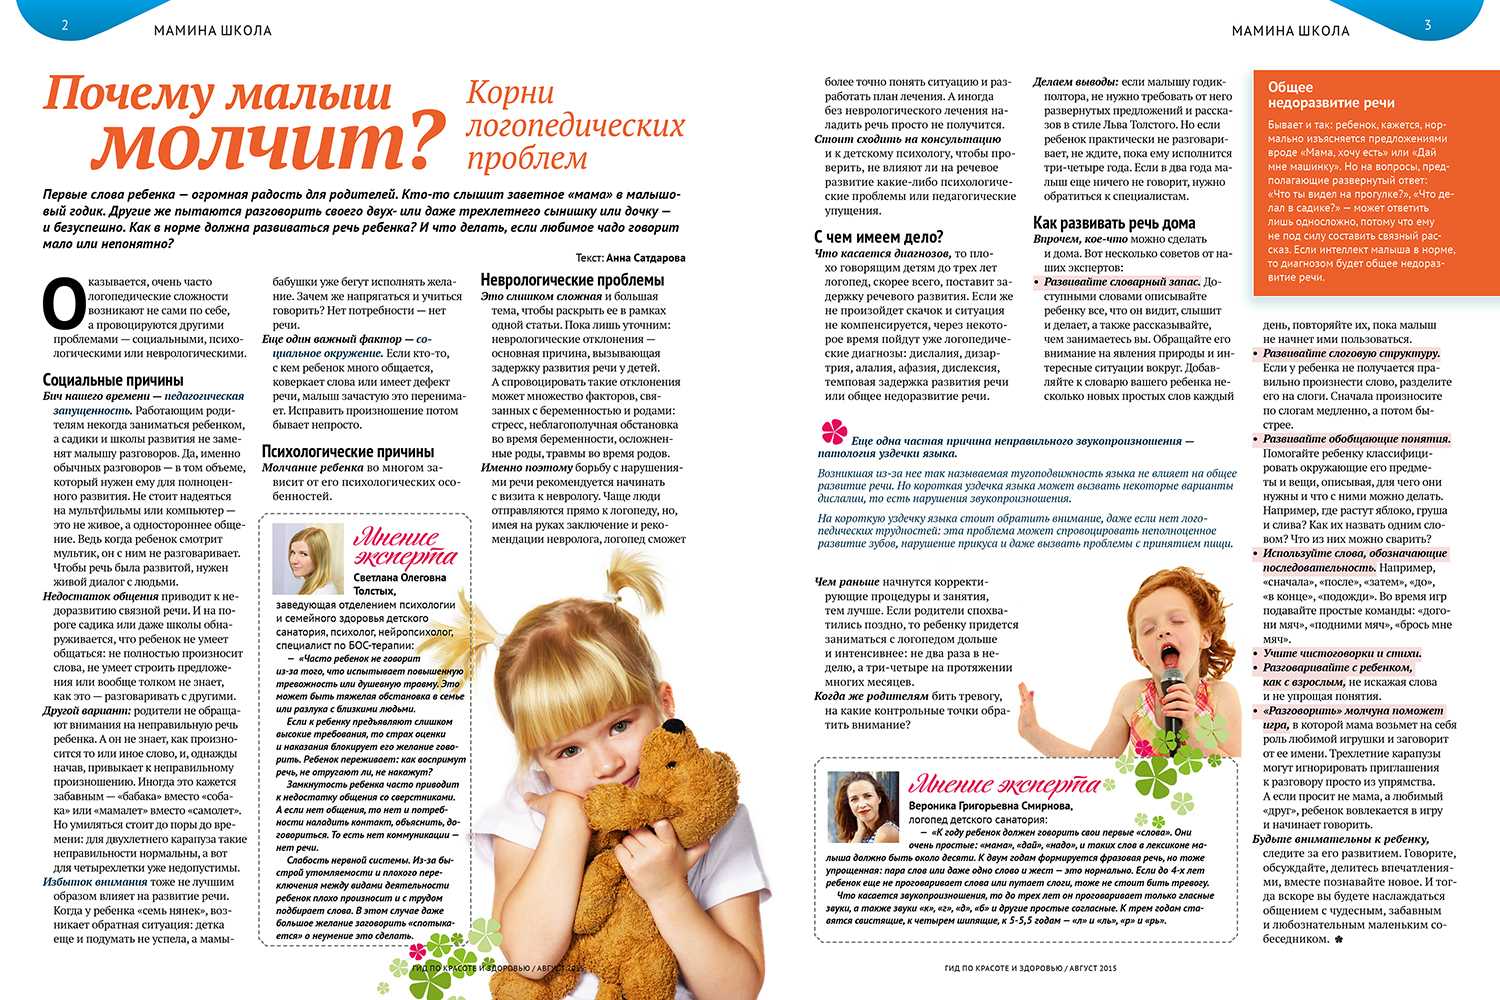 Дети с маленькой разницей (2-3 года). трудности, о которых не пишут в журналах. часть i. наш ребенок.